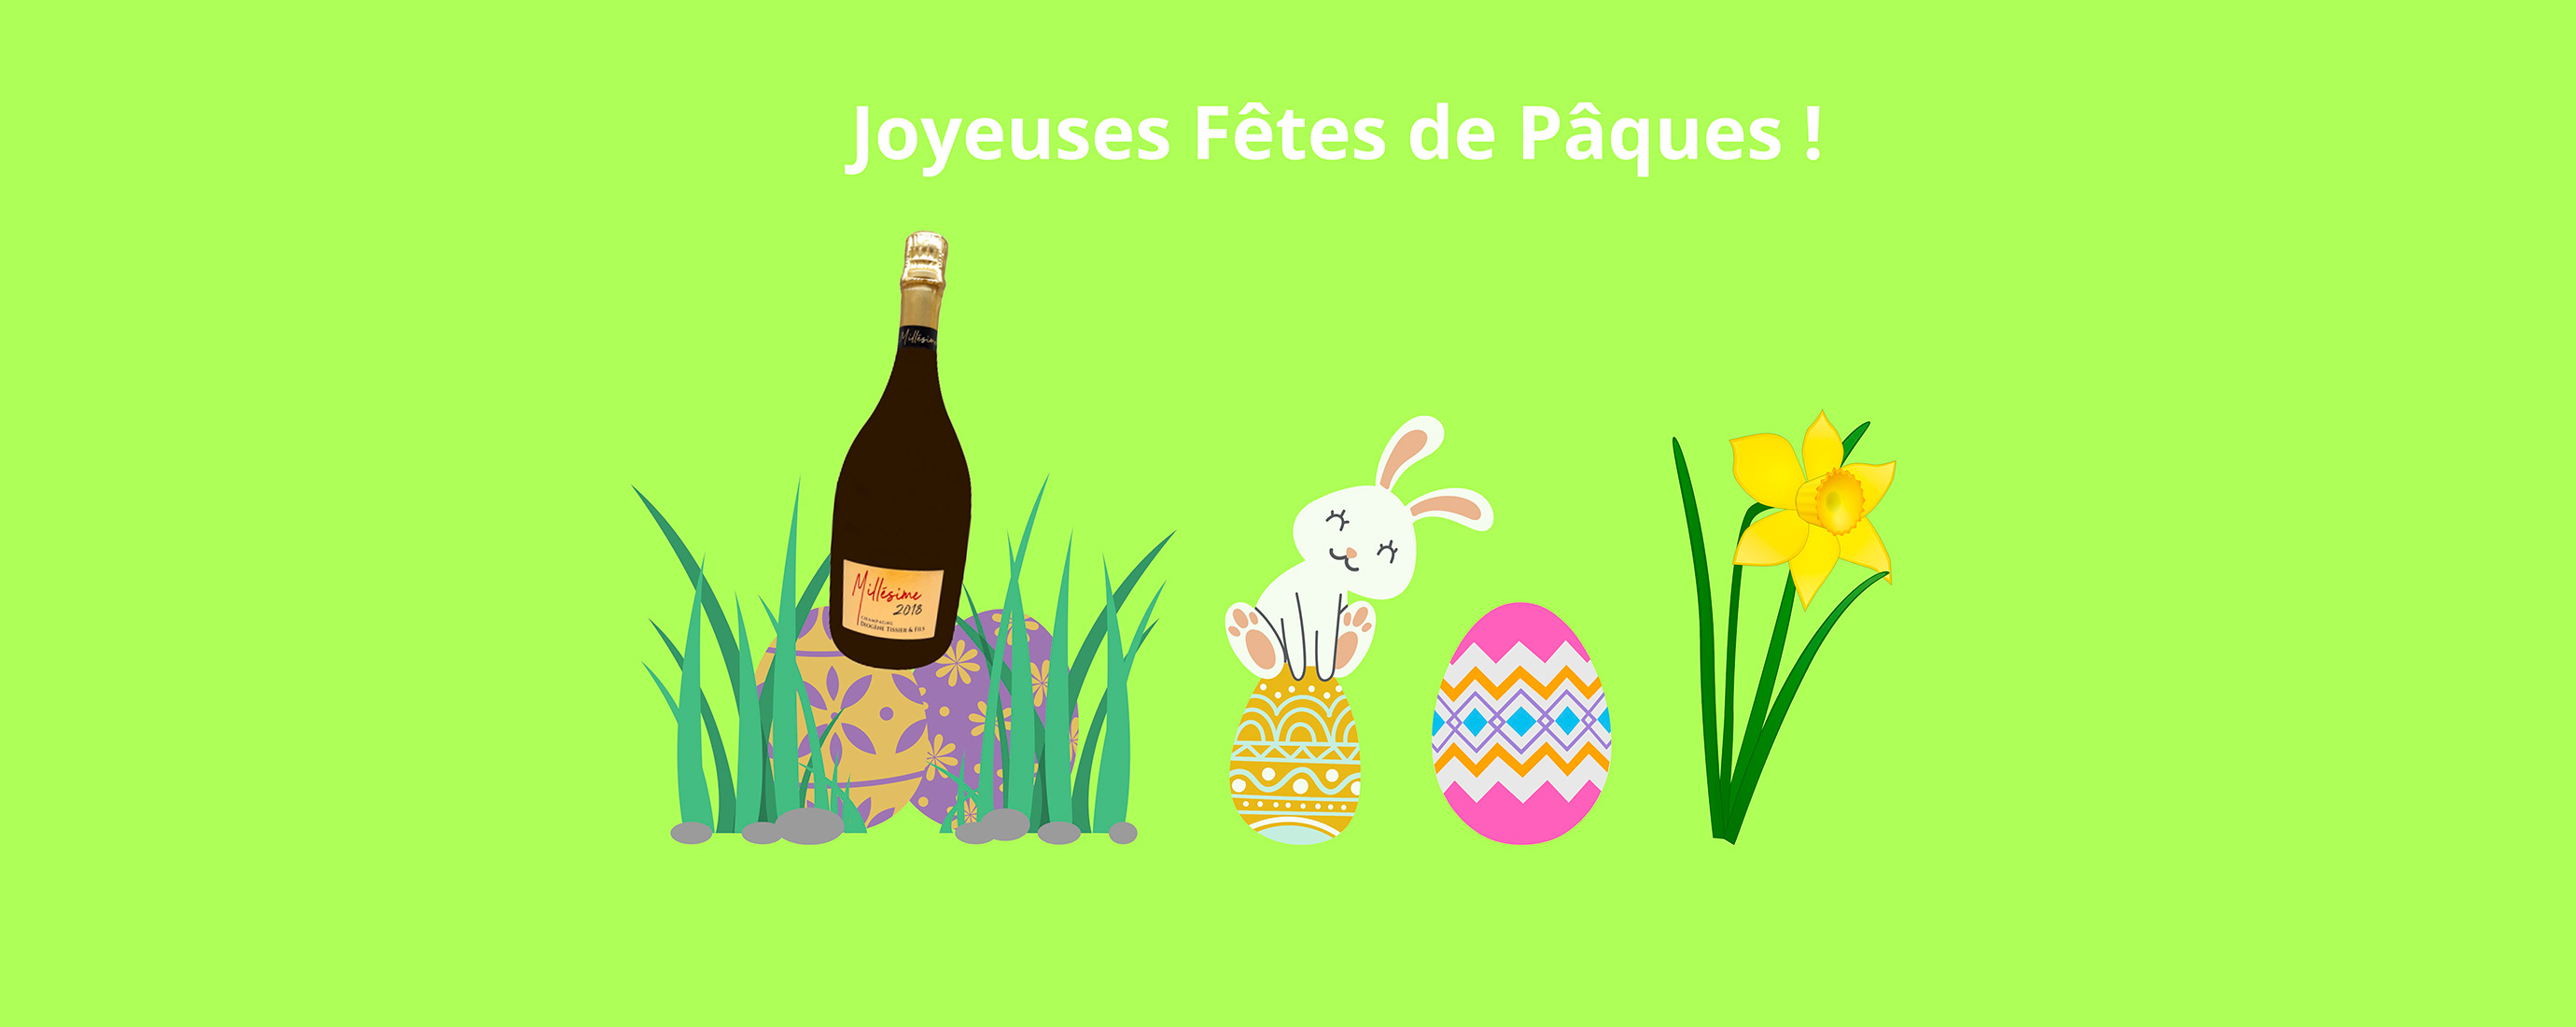 Champagne Diogène Tissier - Joyeuses Fêtes de Pâques !